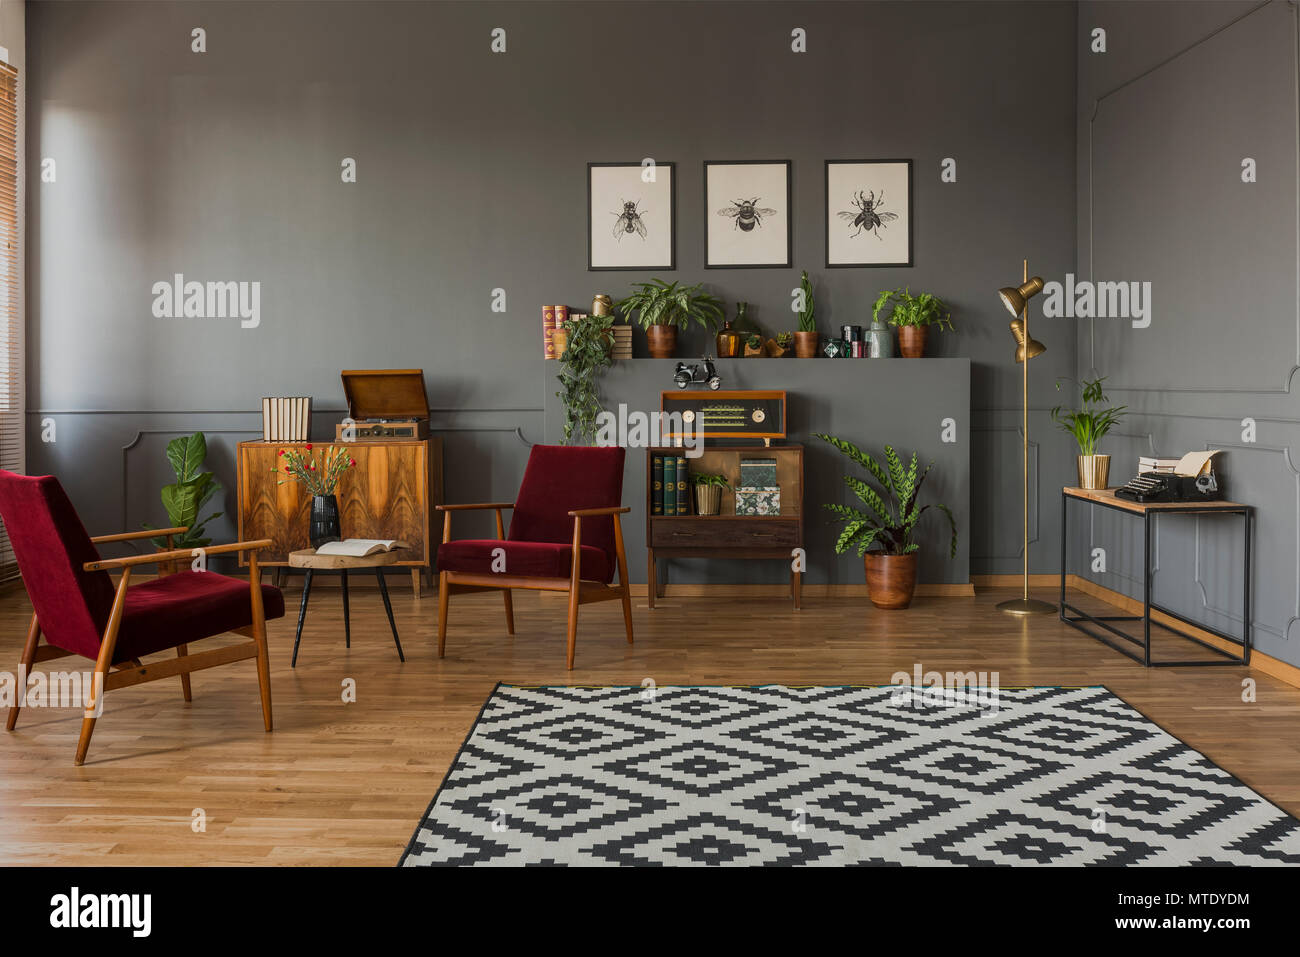 Tapis à motifs gris à l'intérieur salon avec fauteuils en bois rouge foncé et des affiches. Photo réelle Banque D'Images